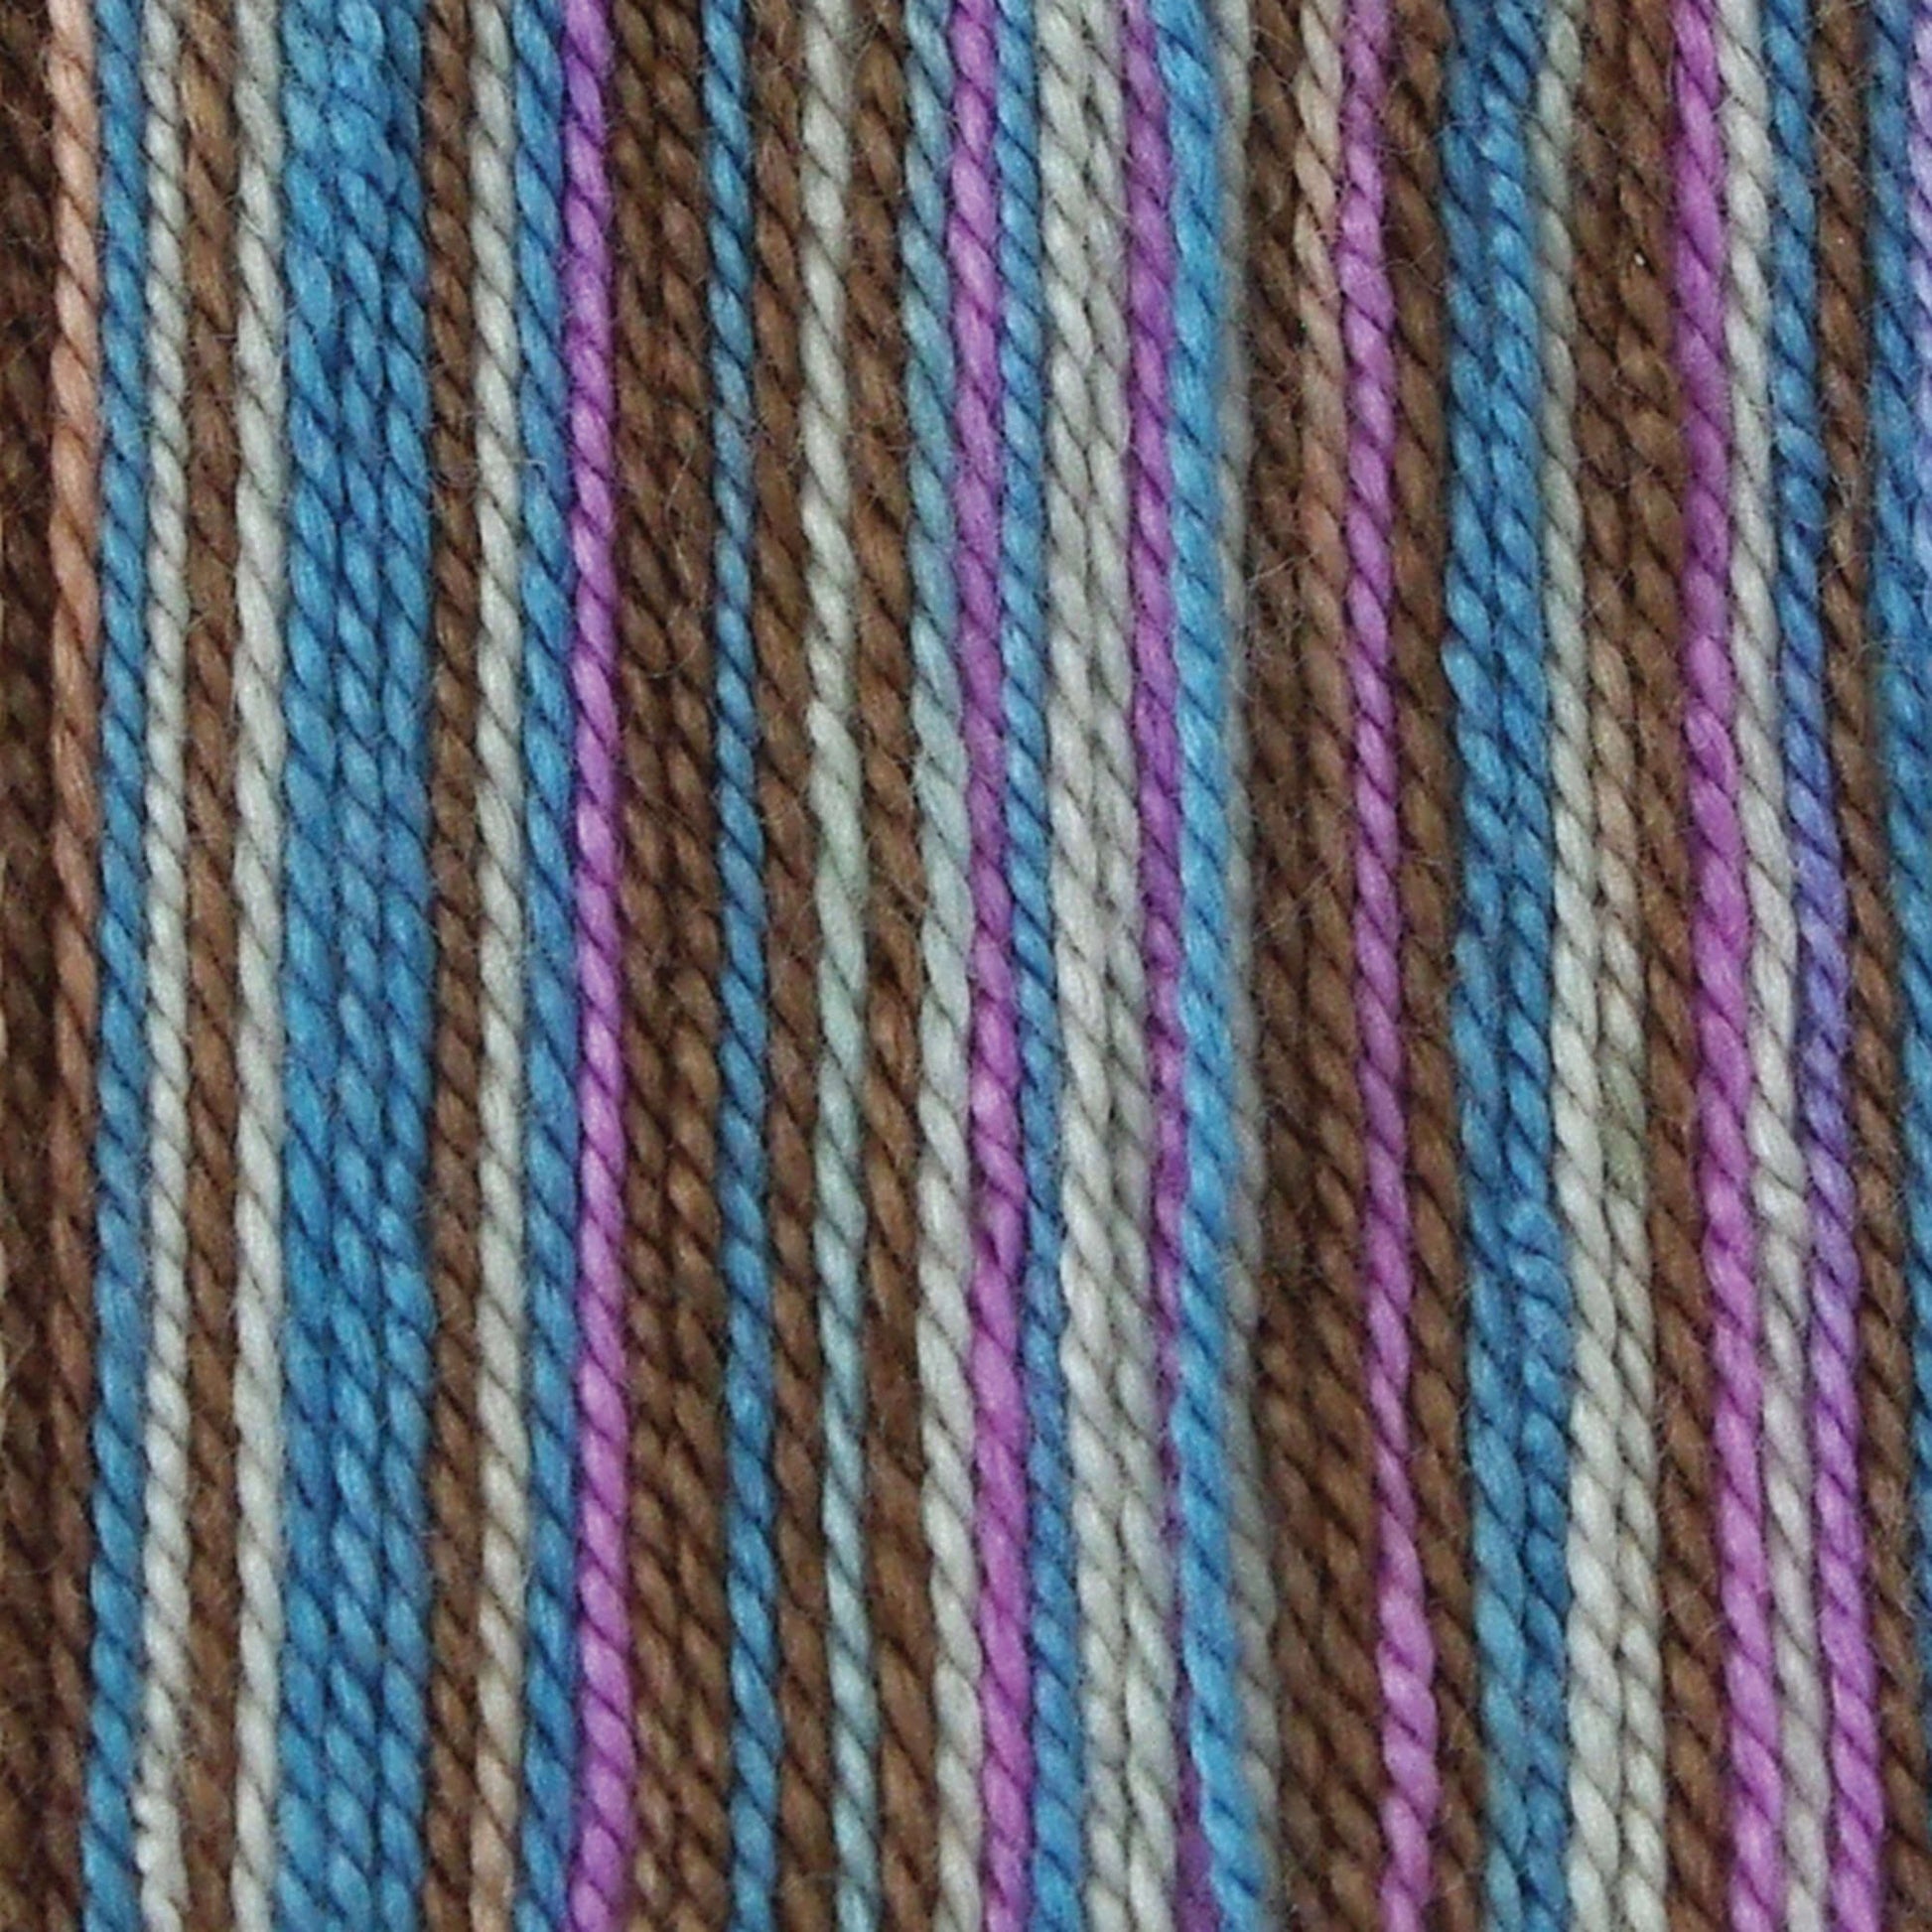 Bernat Handicrafter Ombre Crochet Thread - Discontinued